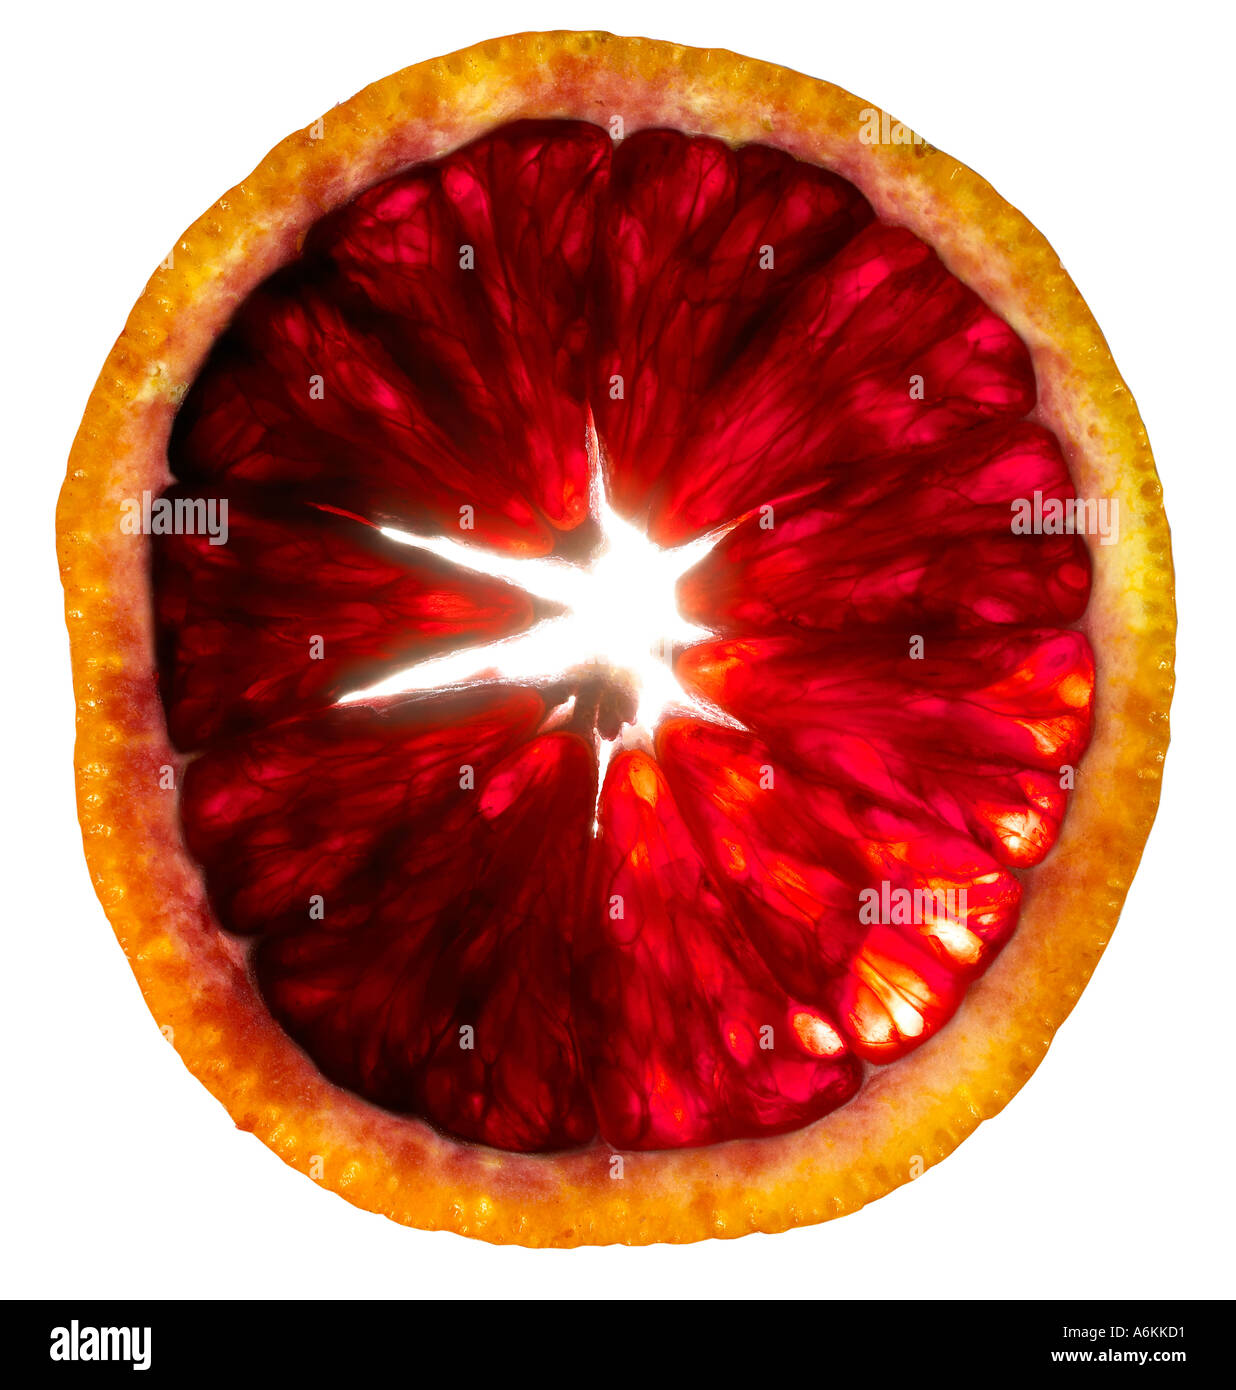 Single slice of blood orange (close-up) Stock Photo